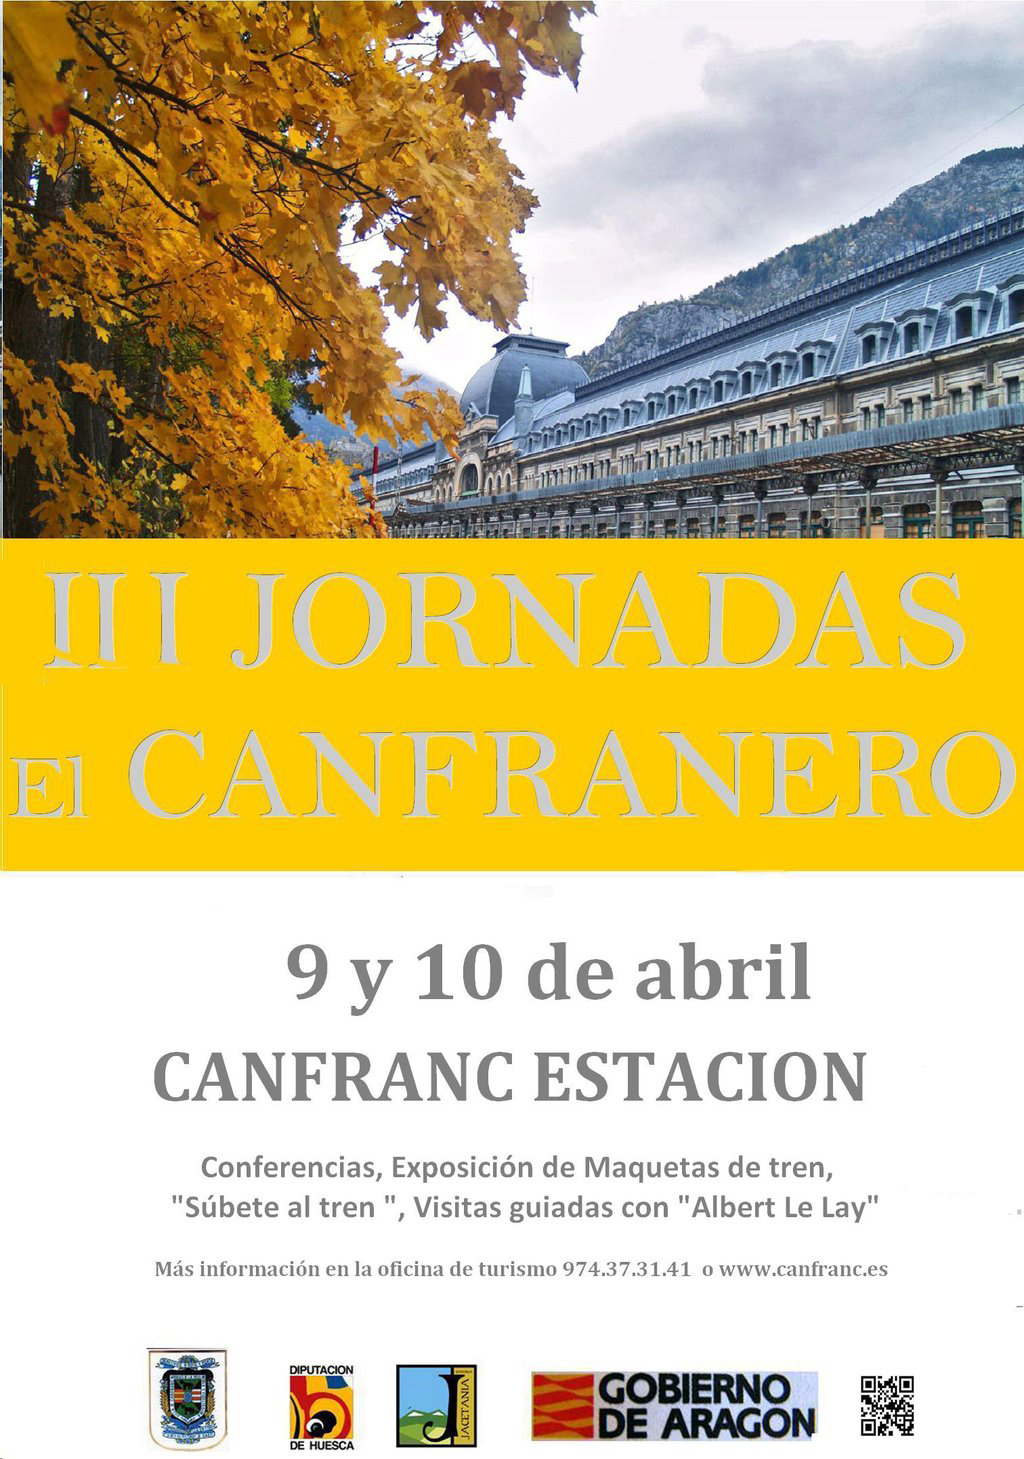 III Jornadas El Canfranero 2016